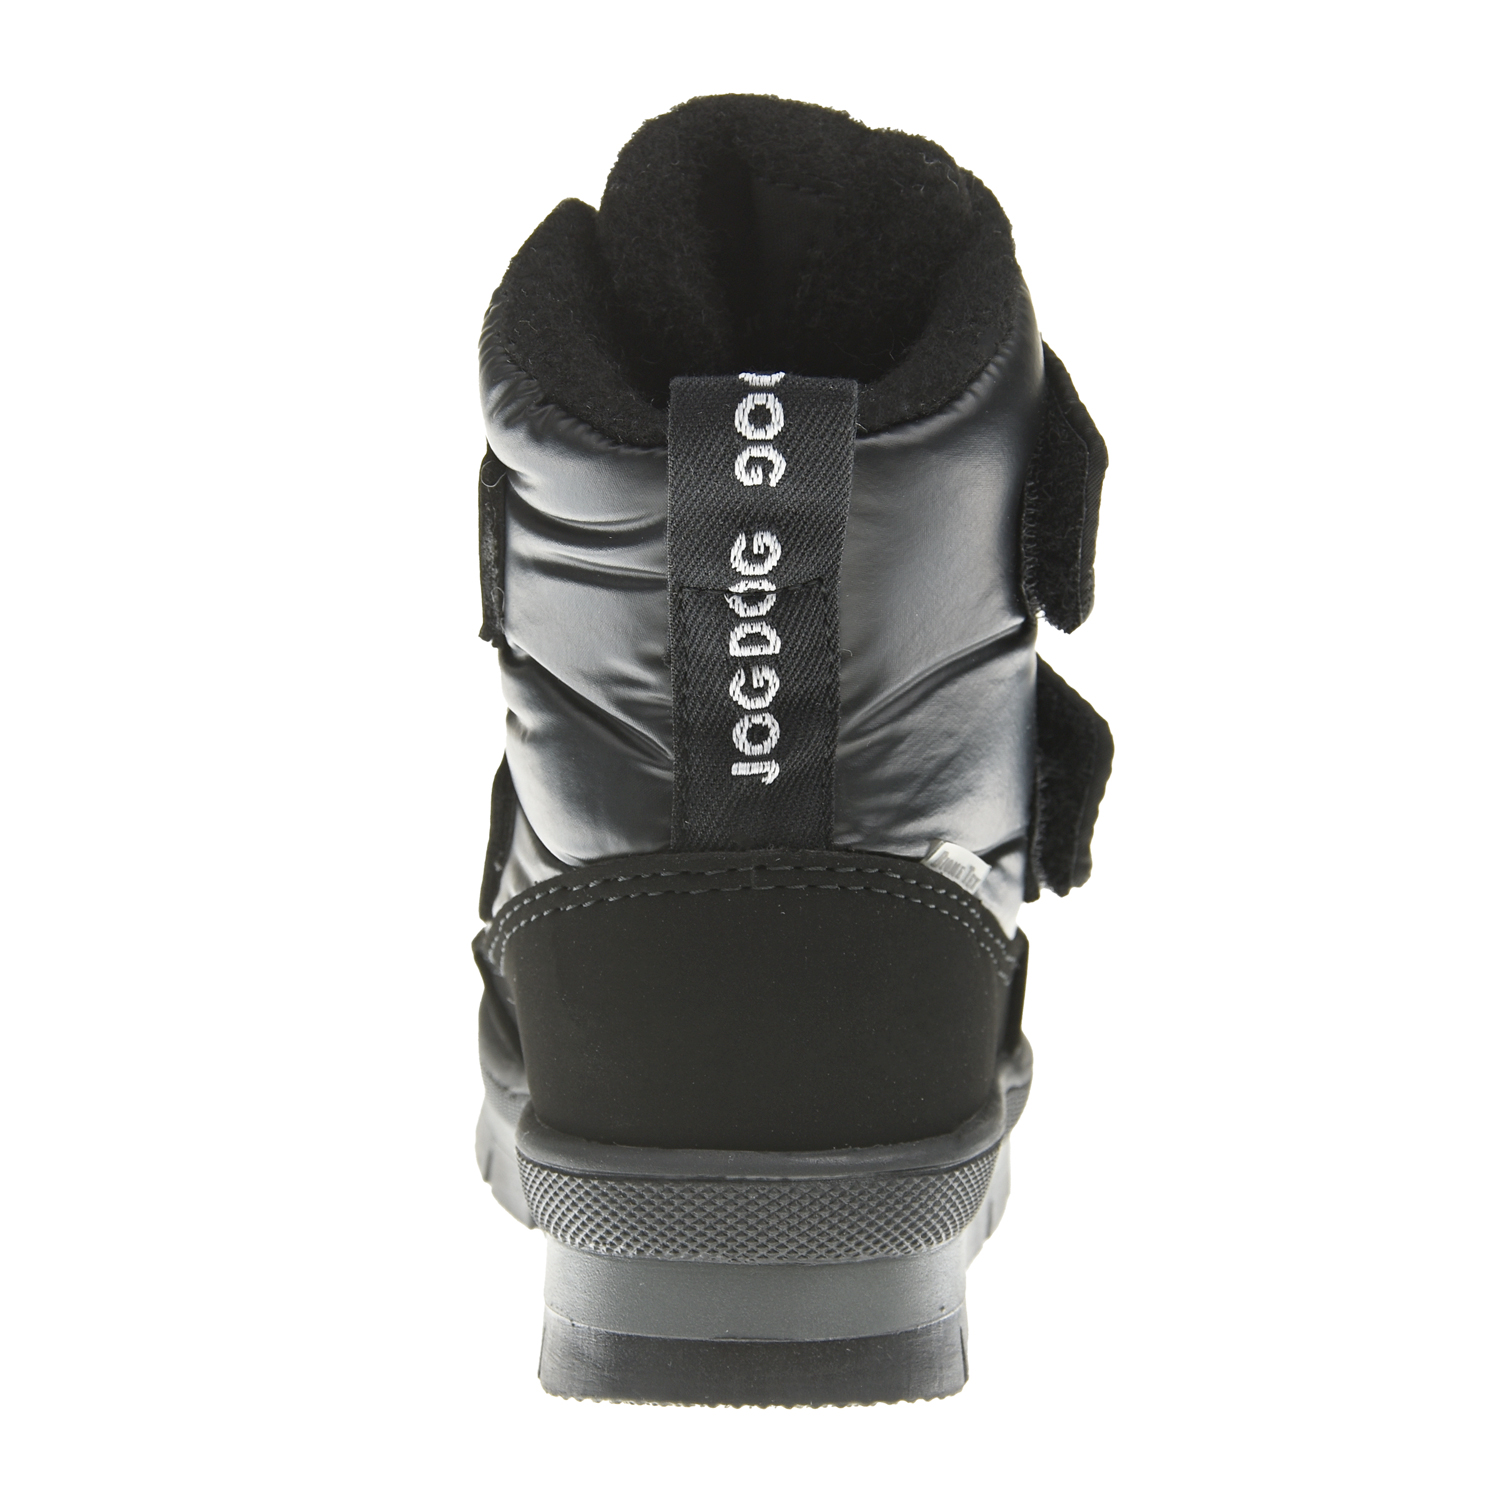 Черные мембранные сапоги с двумя липучками Jog Dog детские, размер 24, цвет черный - фото 3